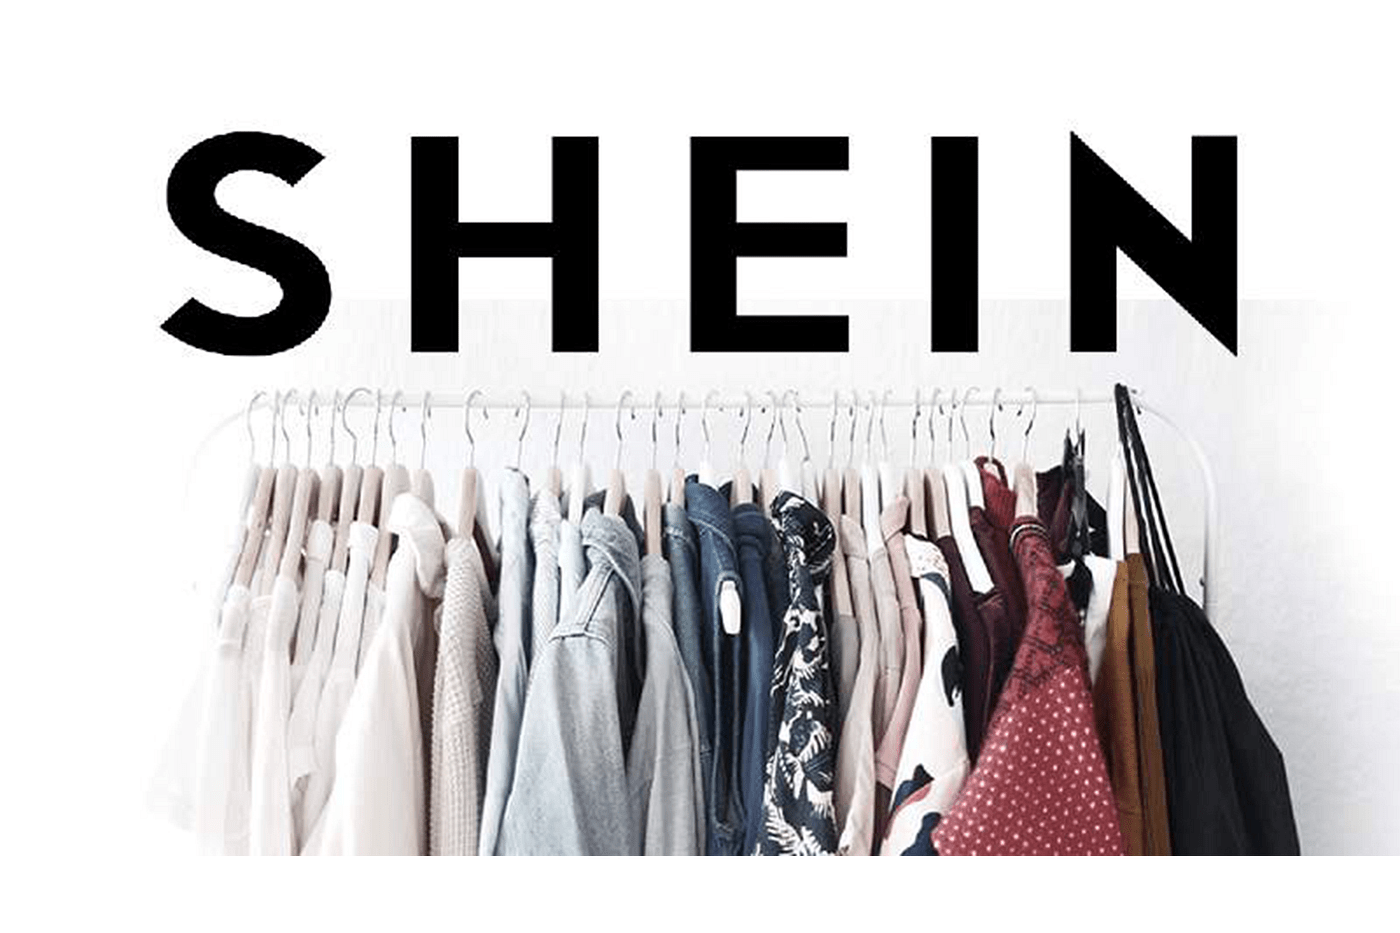 SHEIN Business Model - RETAILBOSS